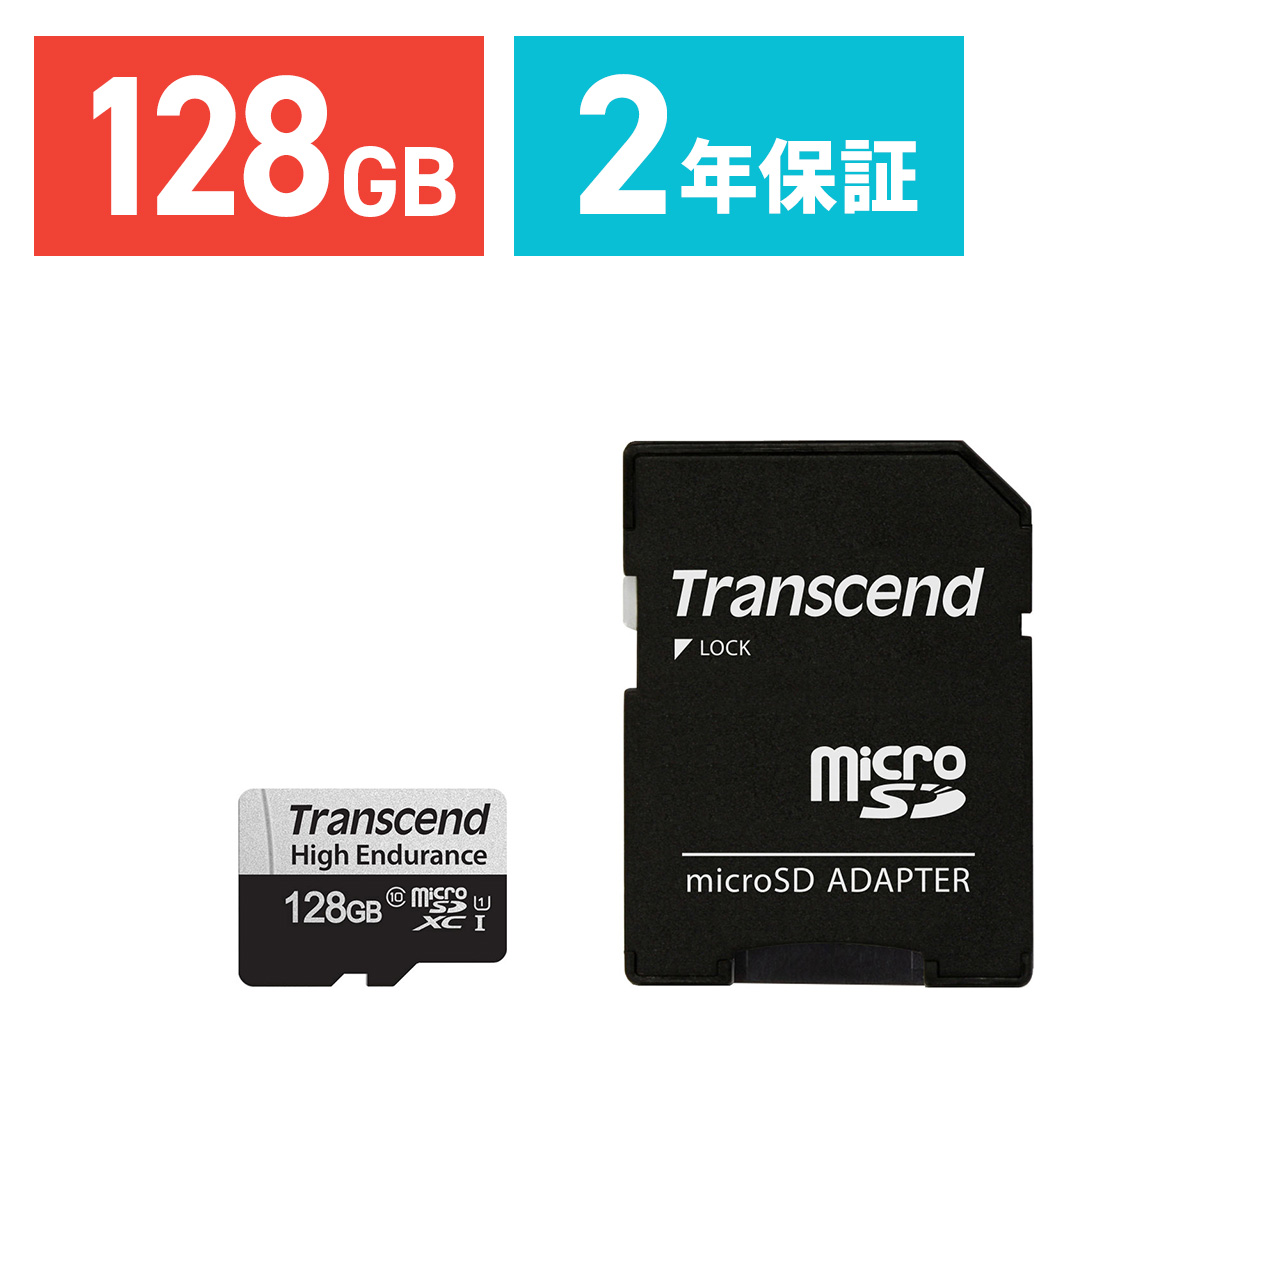 Amazon.co.jp: アイ・オー・データ USB 3.1 Gen 1(USB 3.0)/2.0対応外付けハードディスク(電源内蔵モデル) 2TB  日本メーカー HDJA-UT2R : パソコン・周辺機器